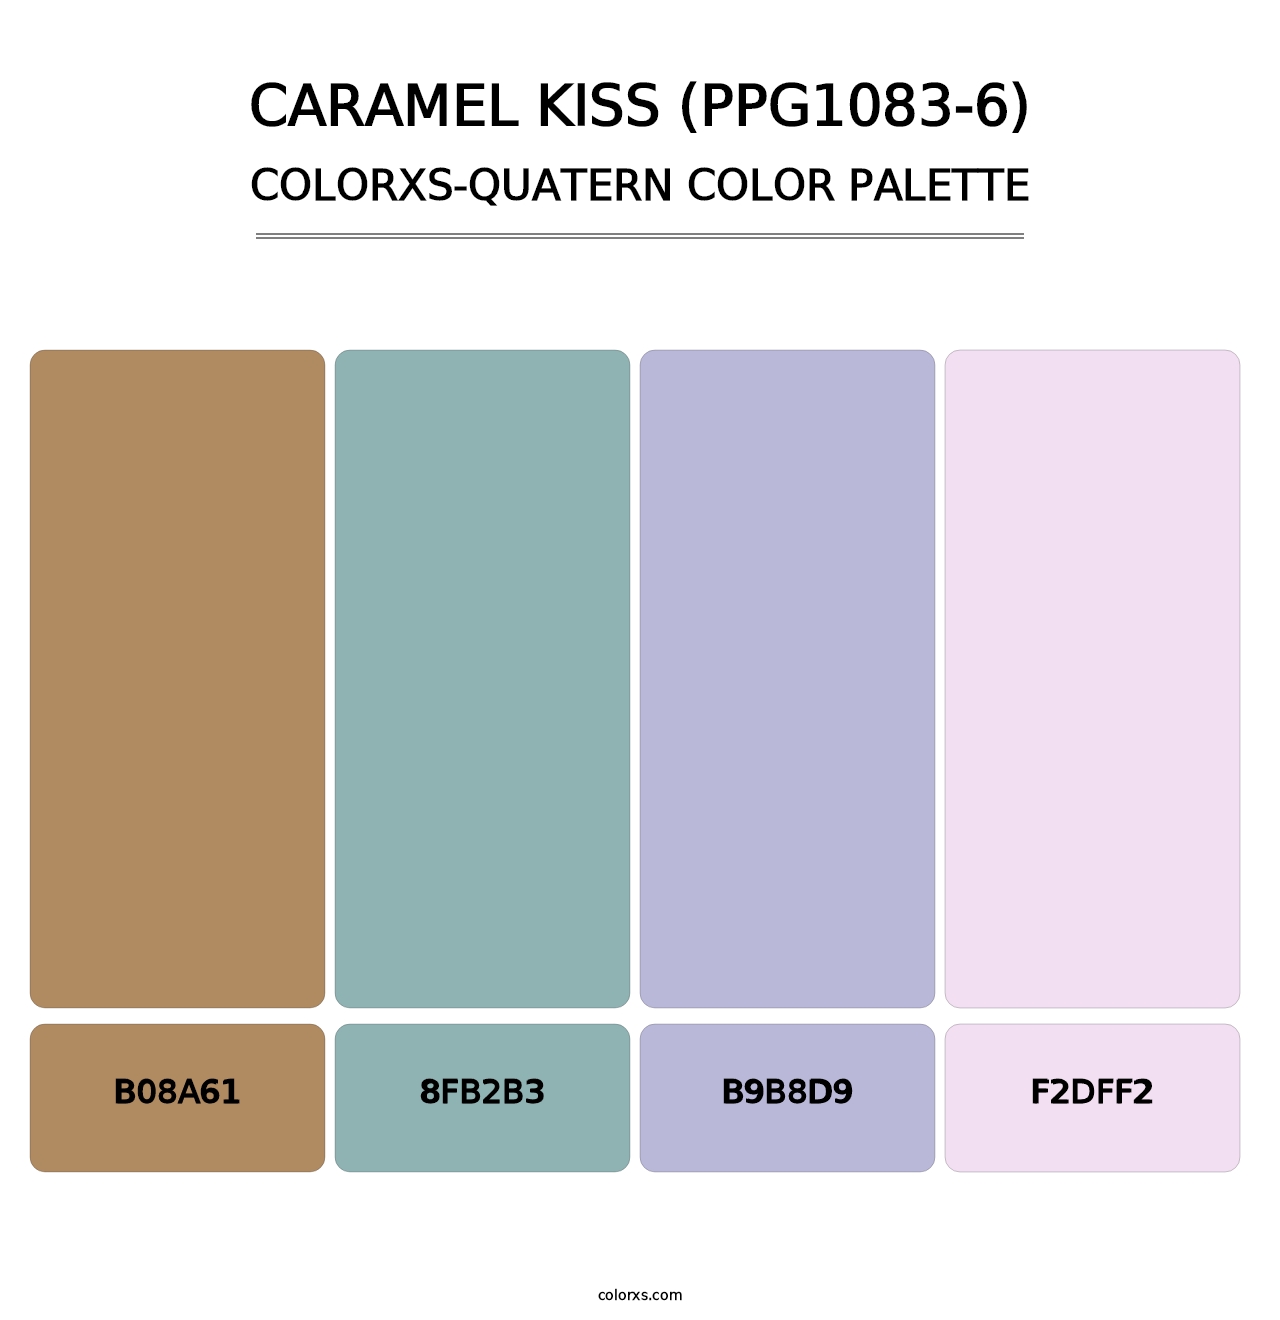 Caramel Kiss (PPG1083-6) - Colorxs Quatern Palette